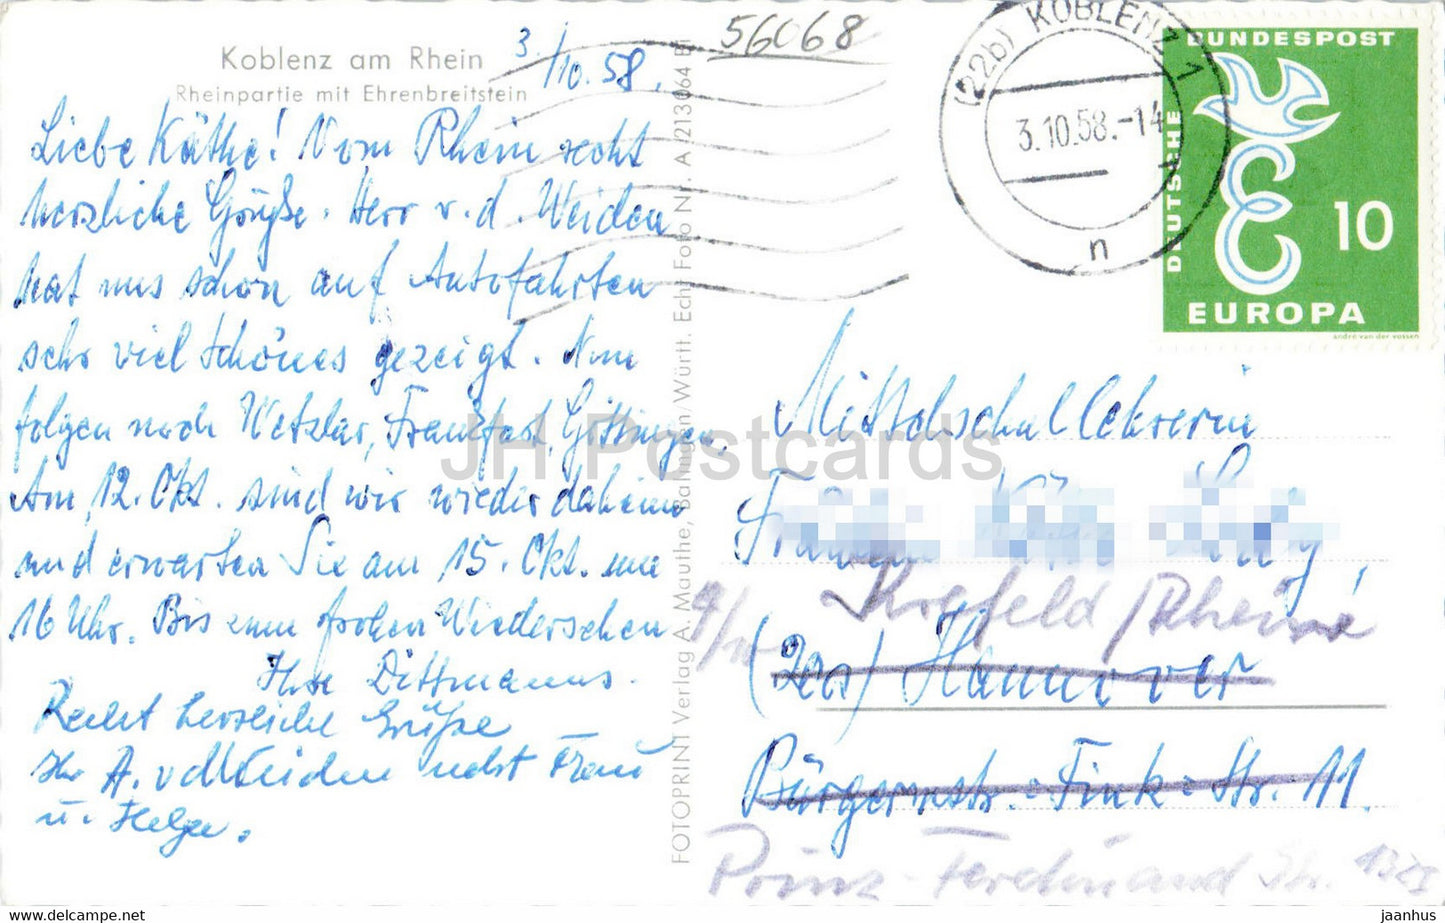 Koblenz am Rhein - Rheinpartie mit Ehrenbreitstein - navire - carte postale ancienne - 1958 - Allemagne - utilisé